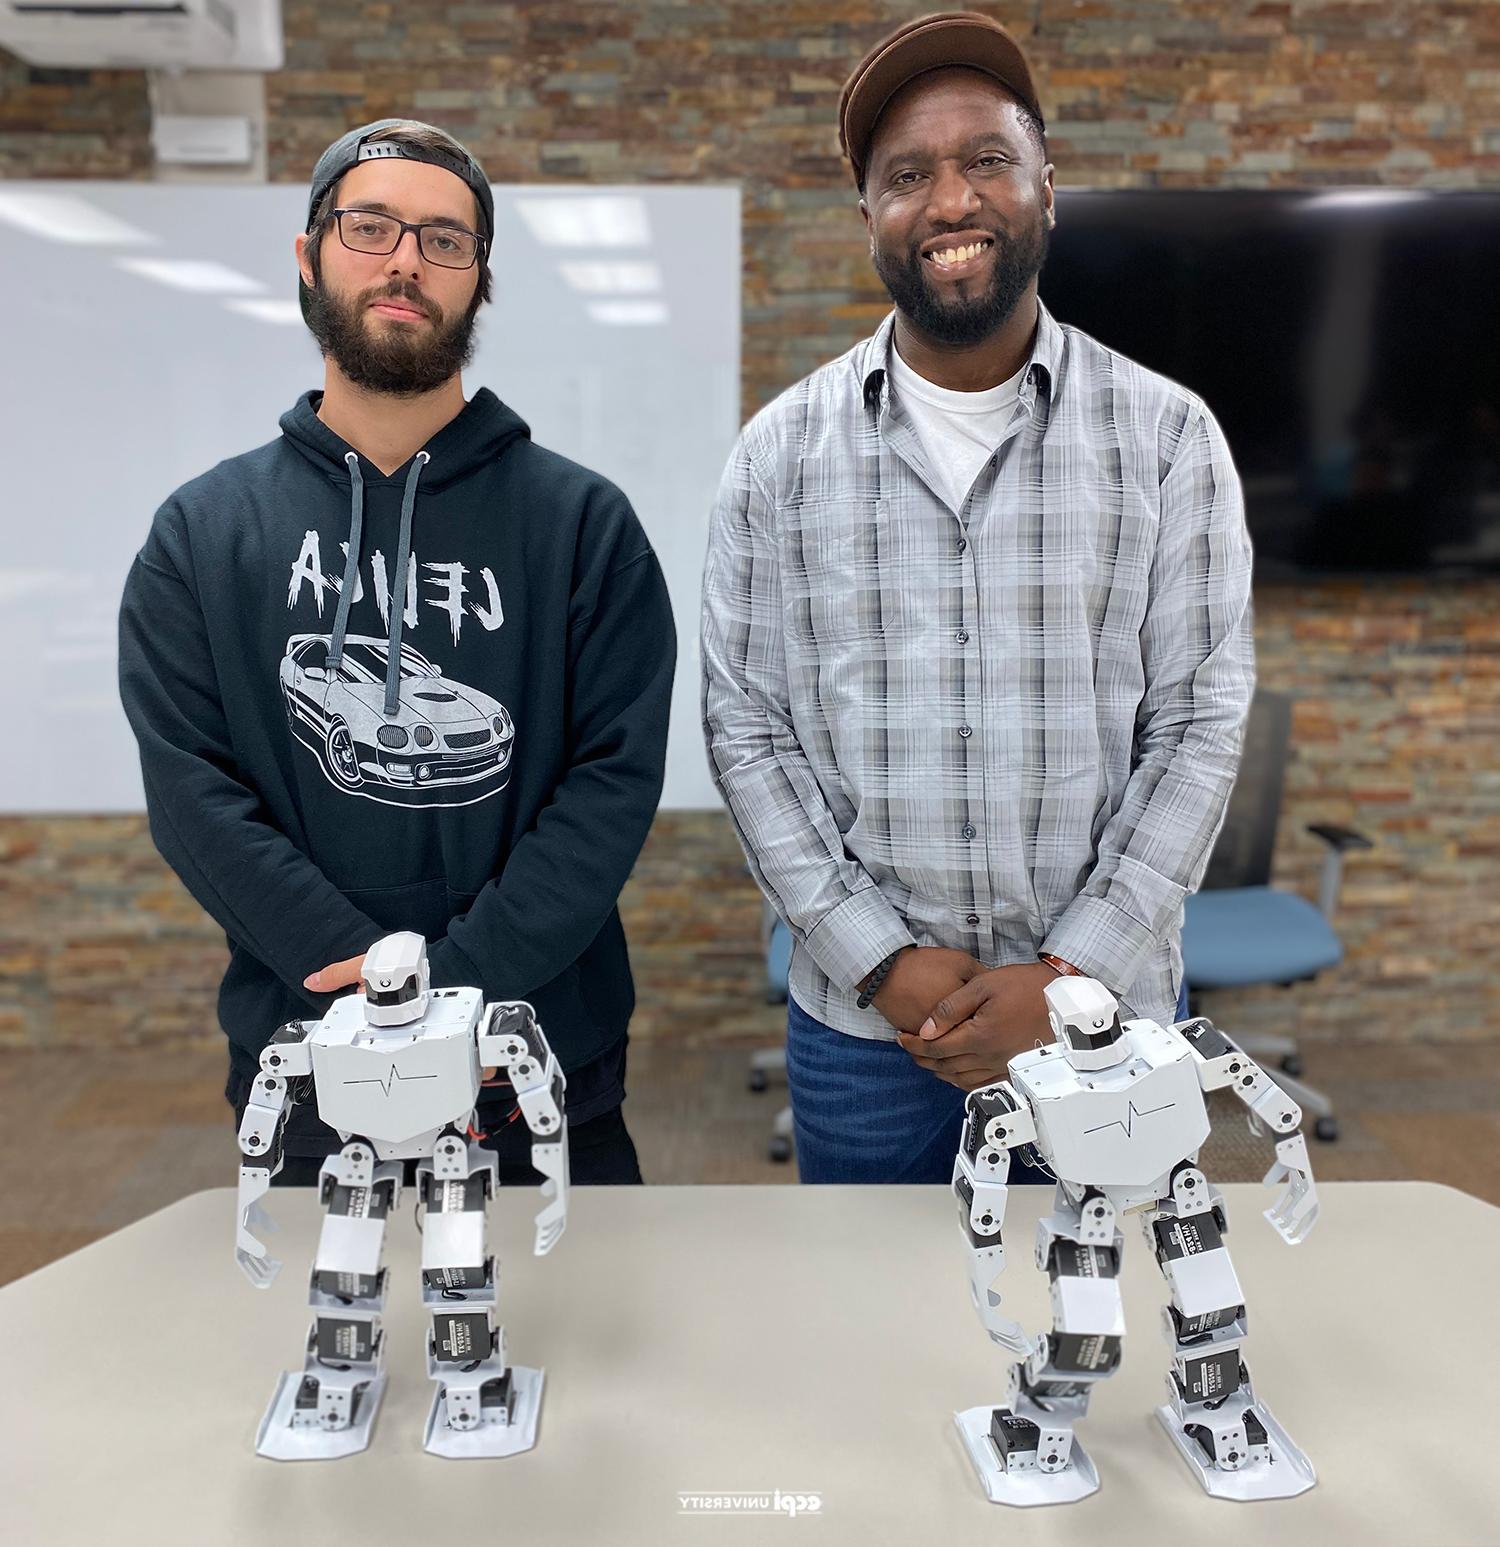 十大正规网堵平台 EET 学生 Win Robot Dance-Off Programming Competition